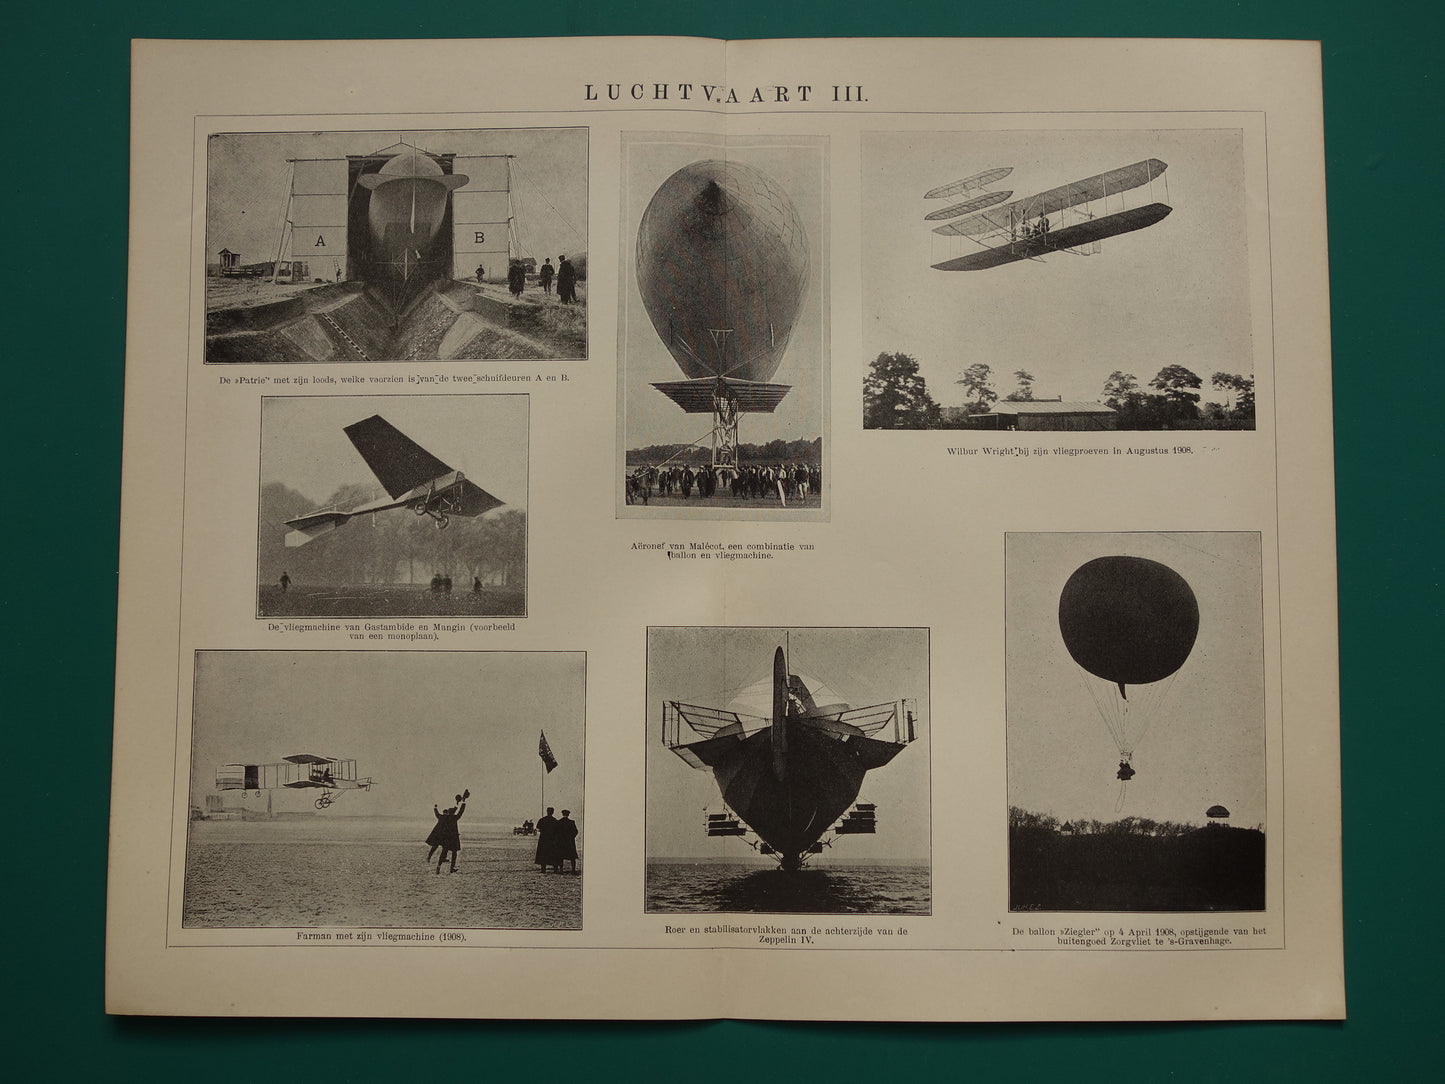 LUCHTVAART antieke illustratie uit het jaar 1909 over Wilbur Wright Ziegler ballon Zeppelin Farman vliegtuig originele oude print